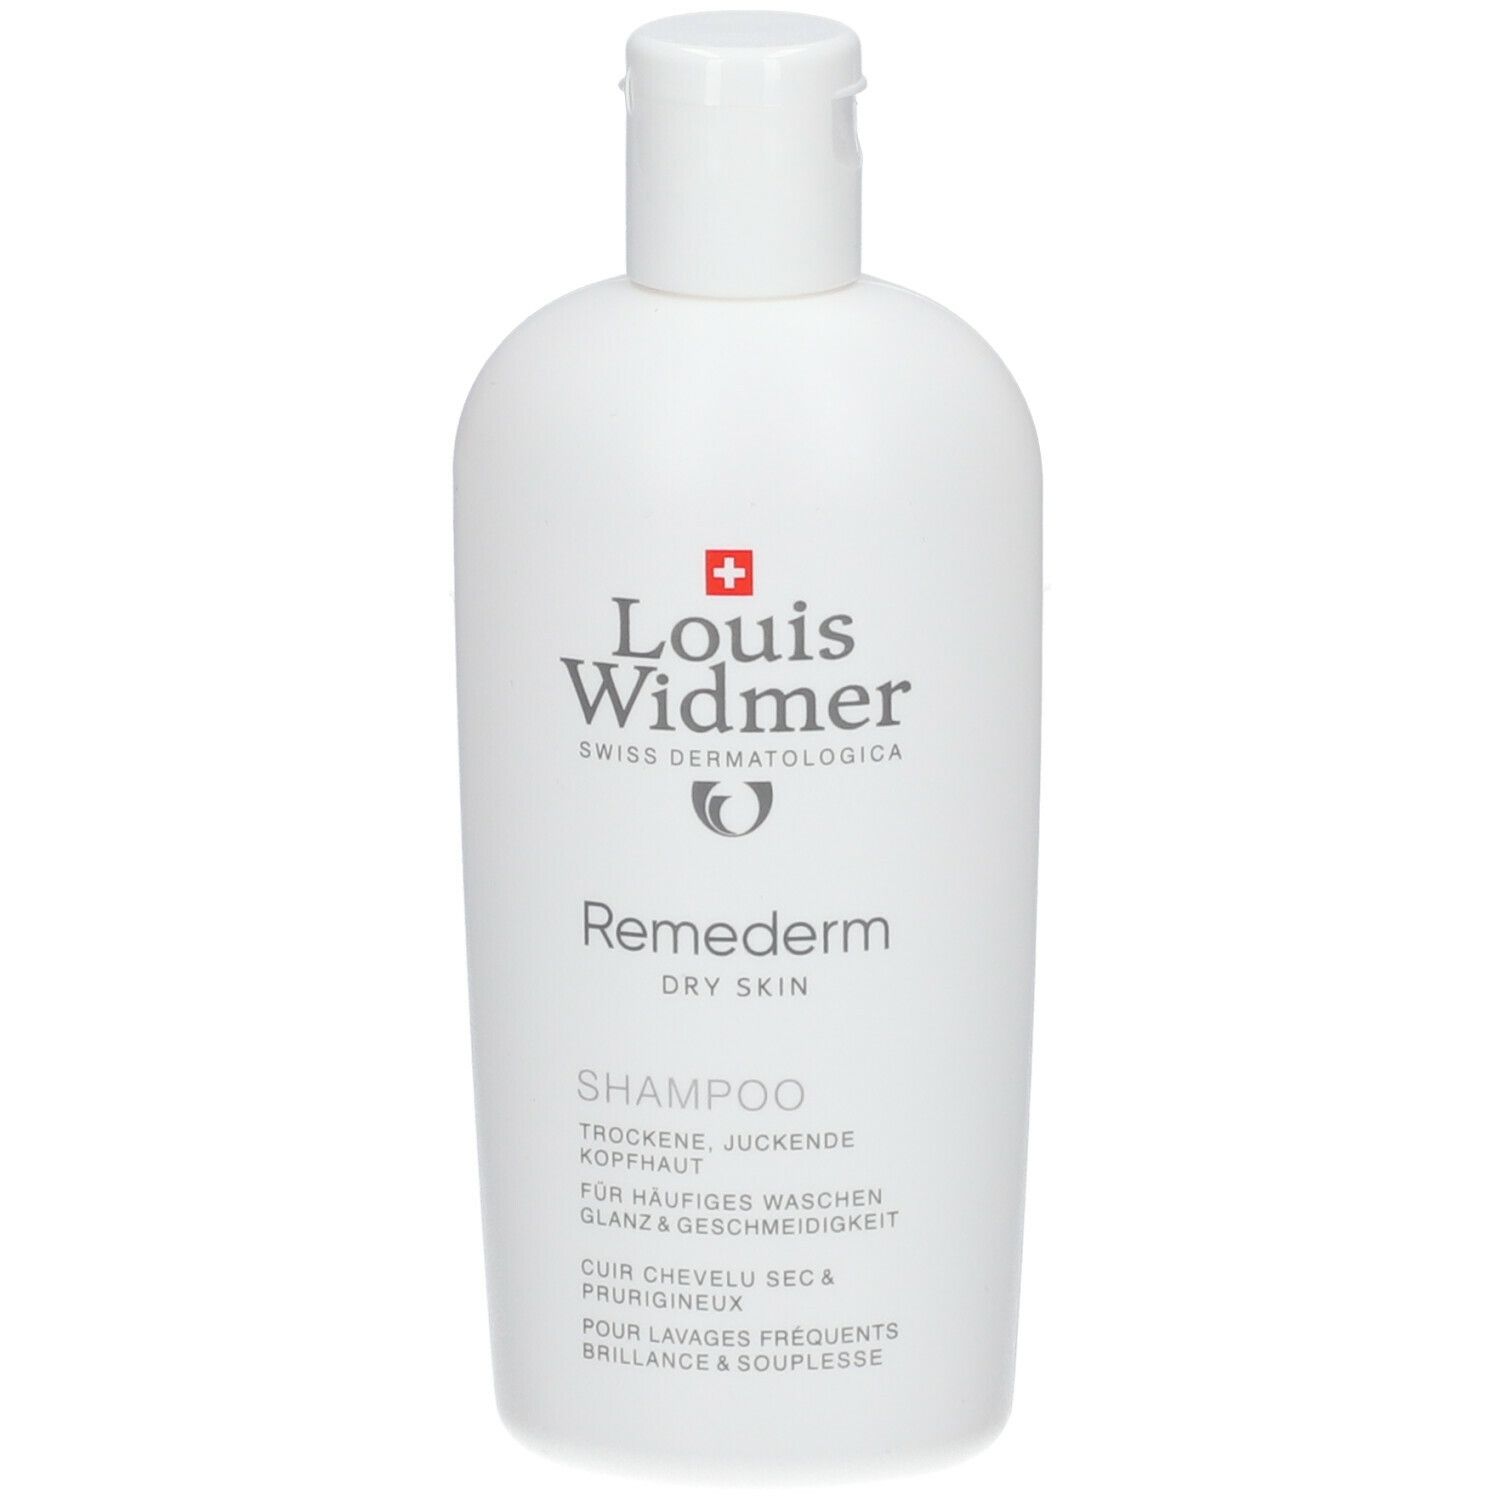 Louis Widmer Remederm Shampoo légèrement parfumé